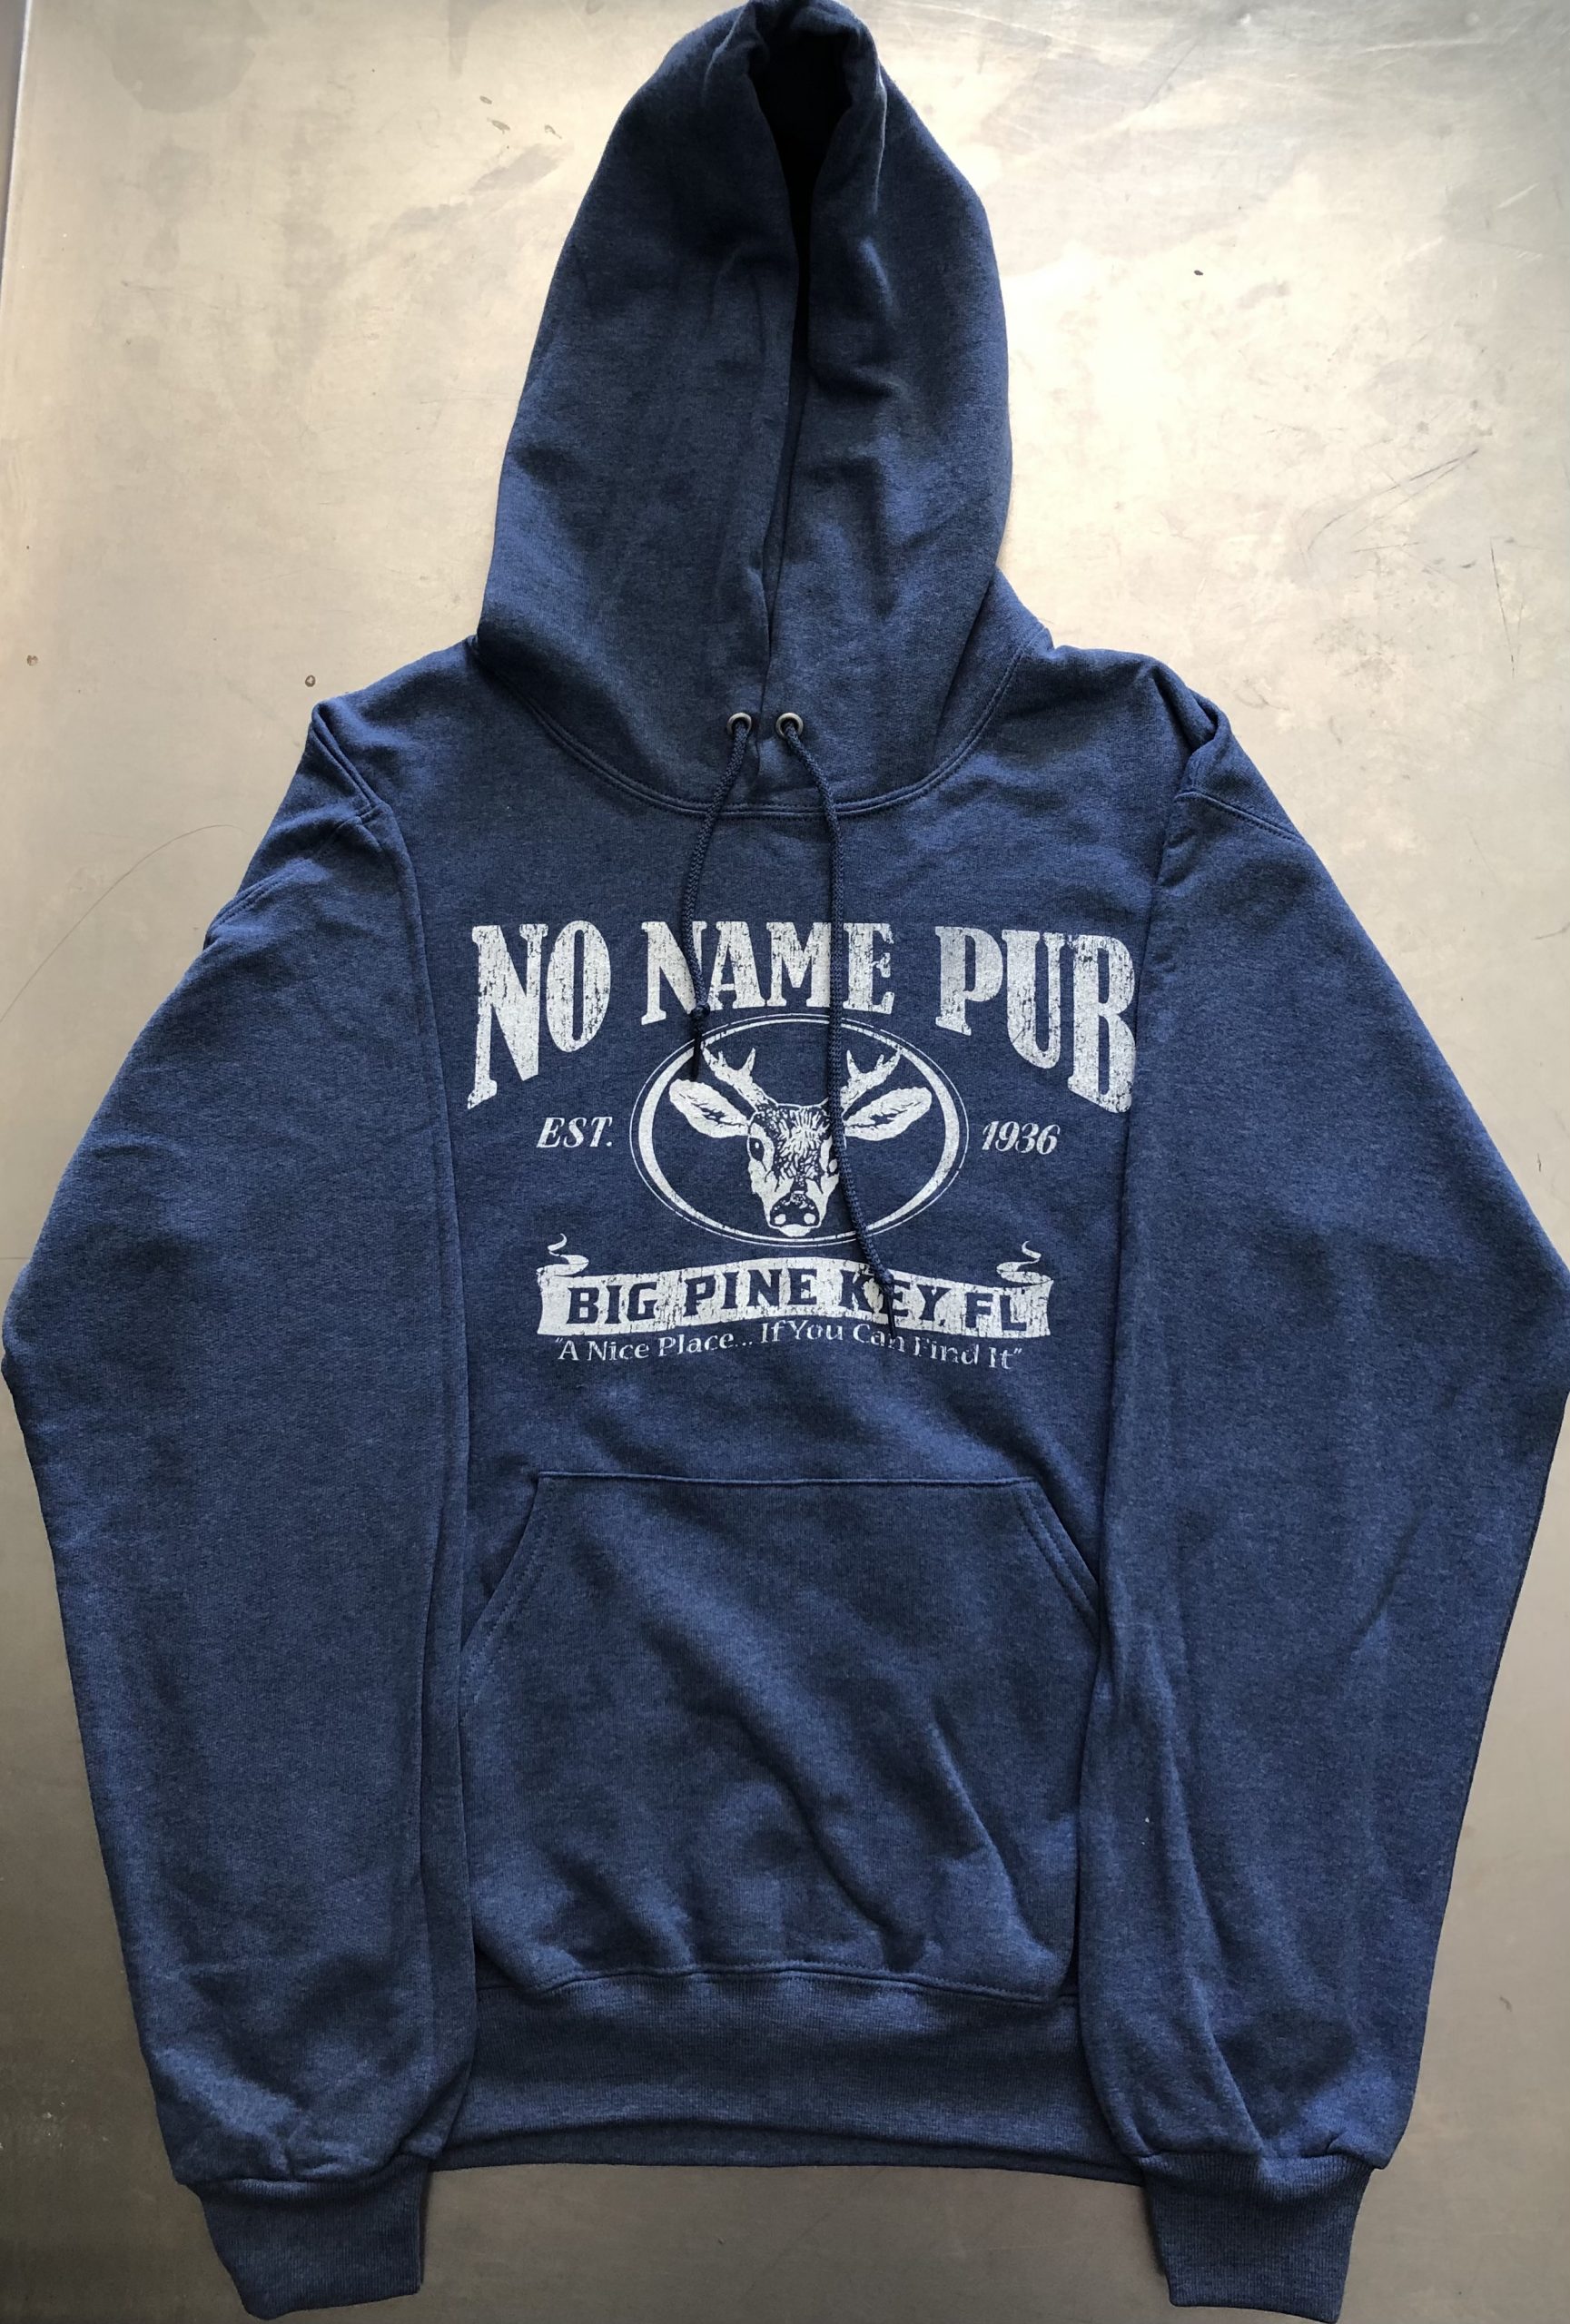 Hoodie Sweatshirt - No Name Pub